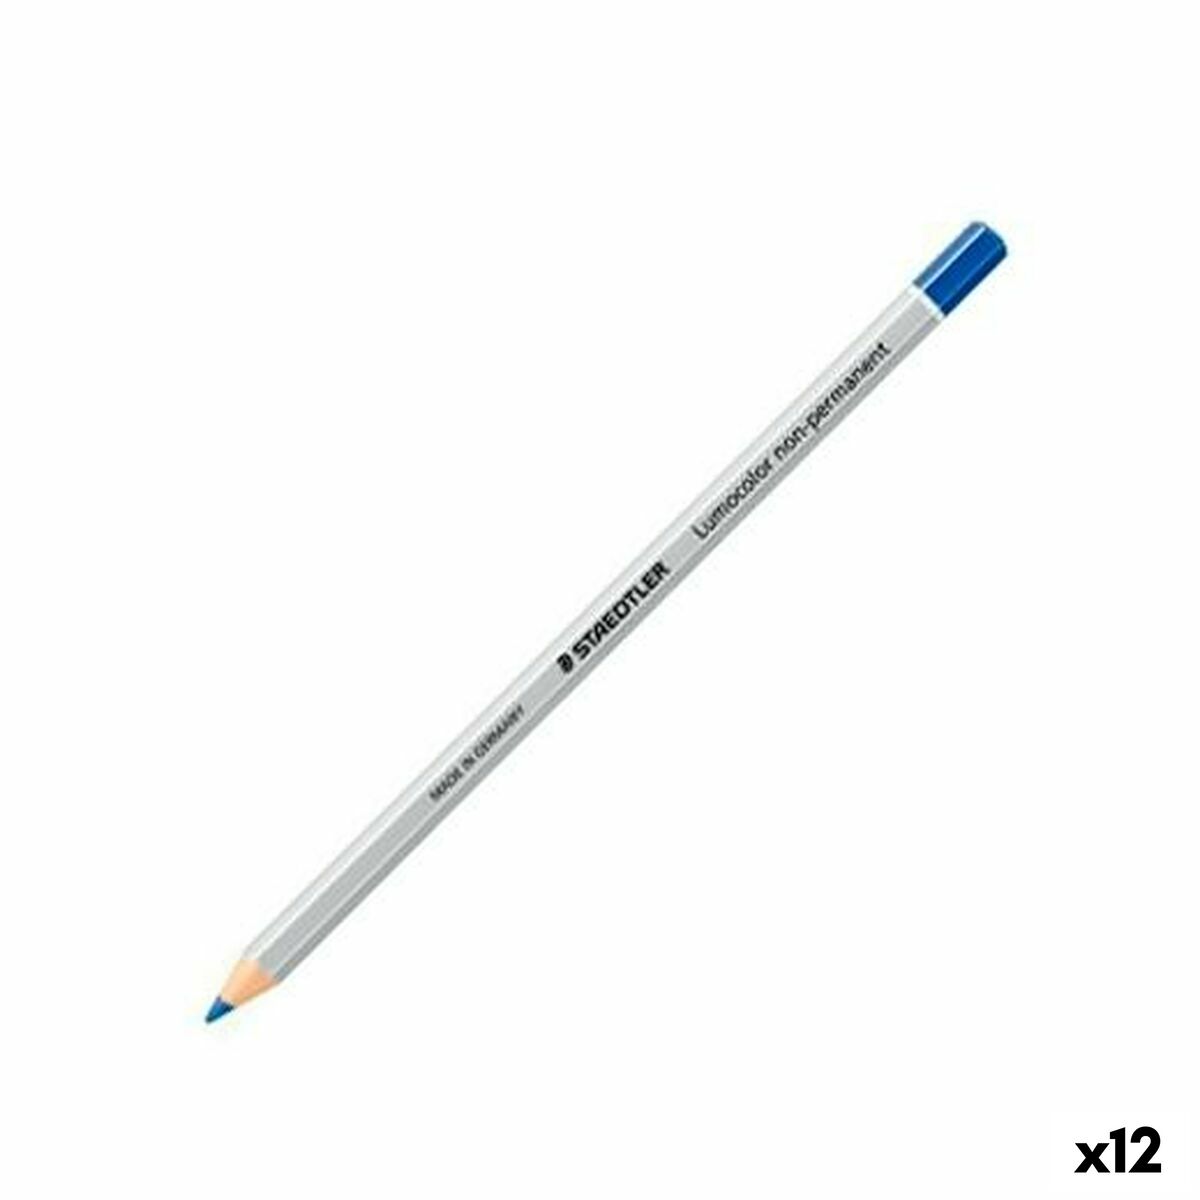 Crayon marqueur Staedtler Lumocolor Non permanent Bleu (12 Unités)